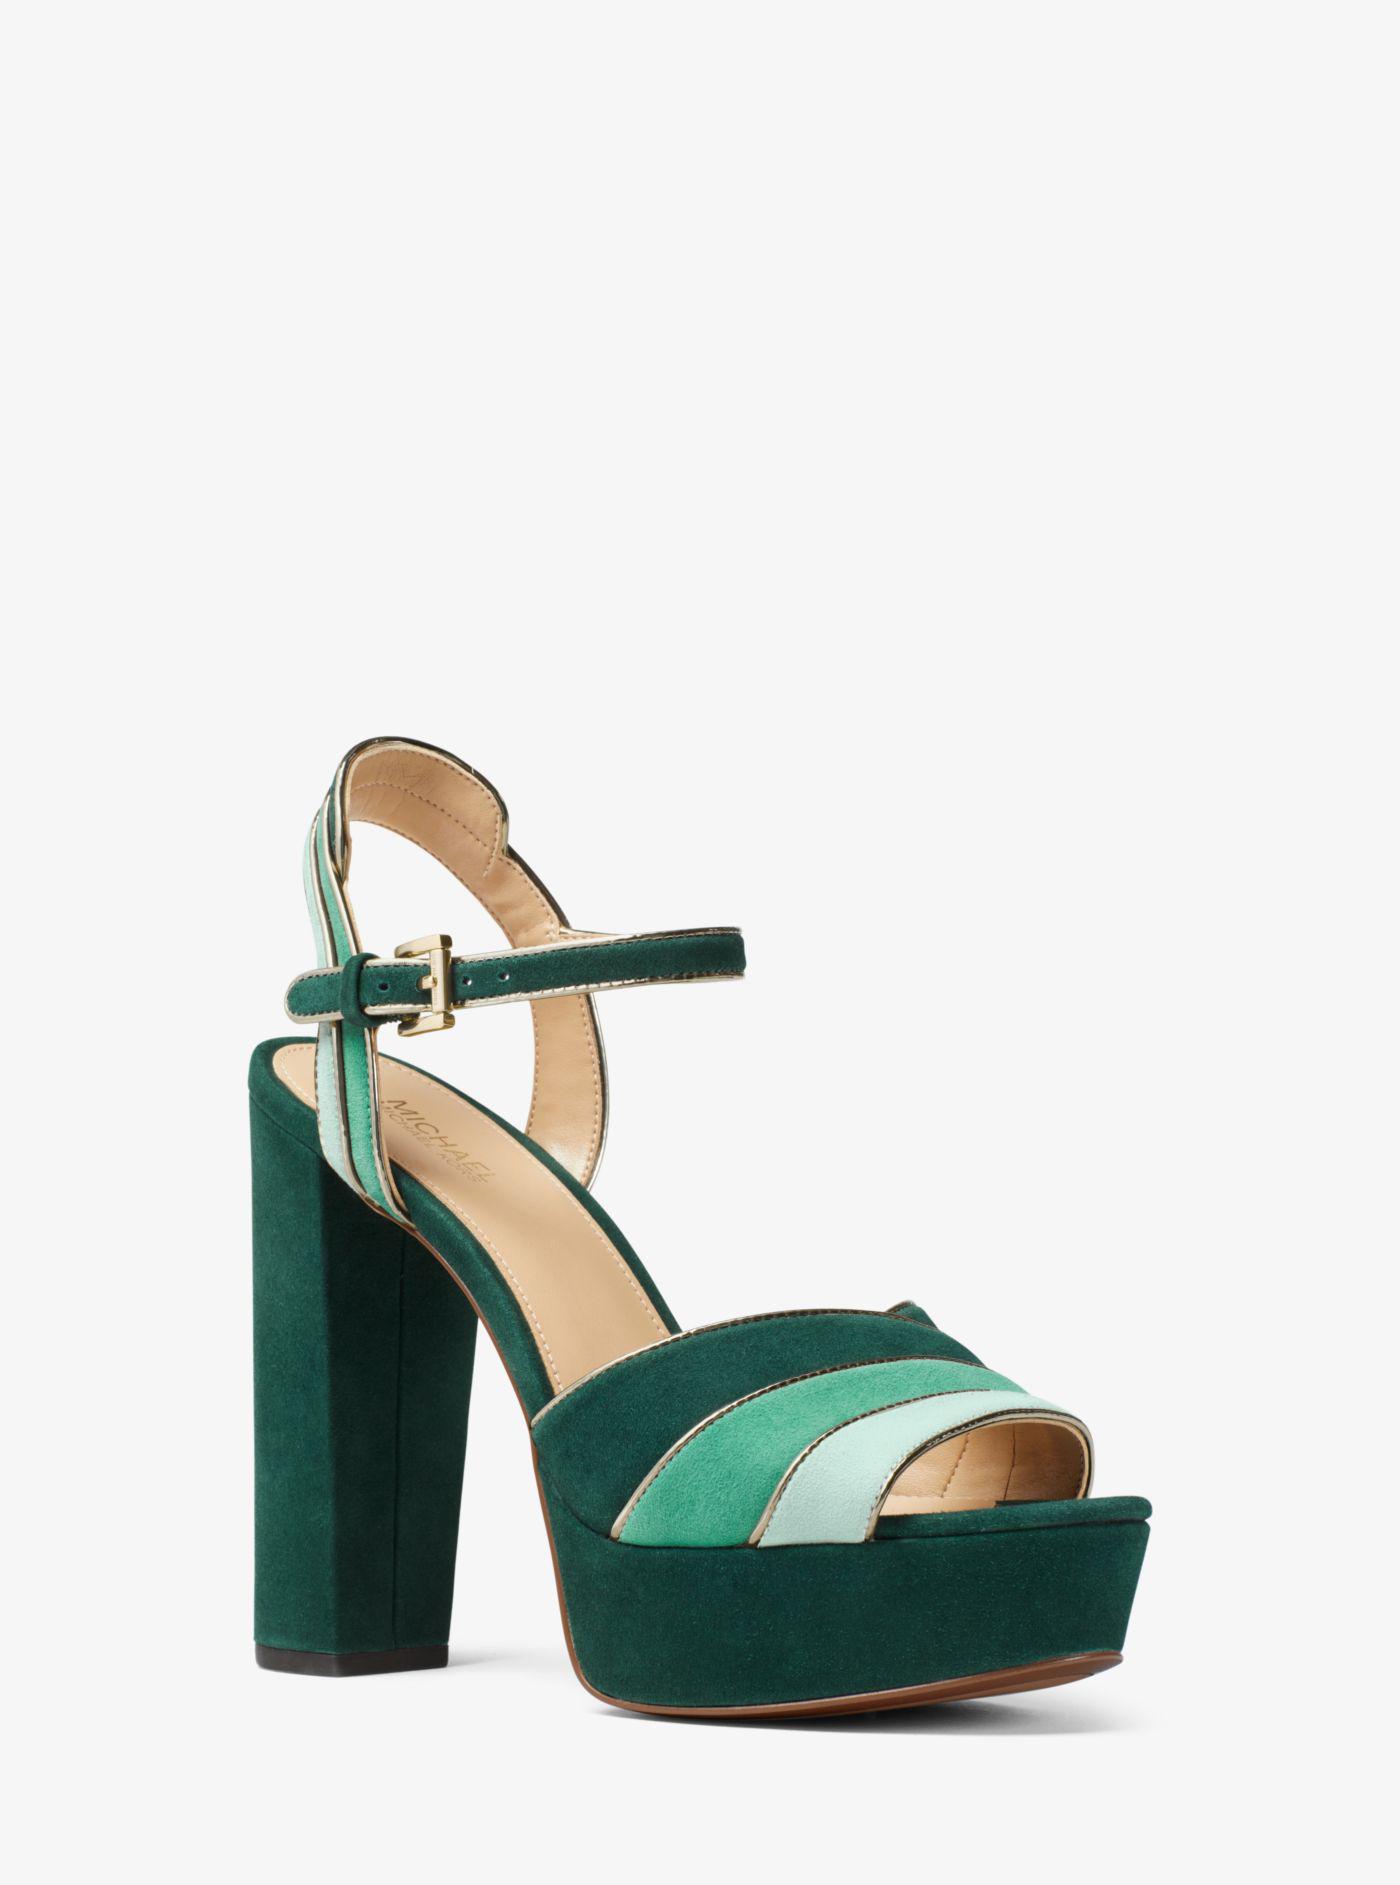 Michael Kors Harper Tri-color Suede Platform Sandal in Green | Lyst